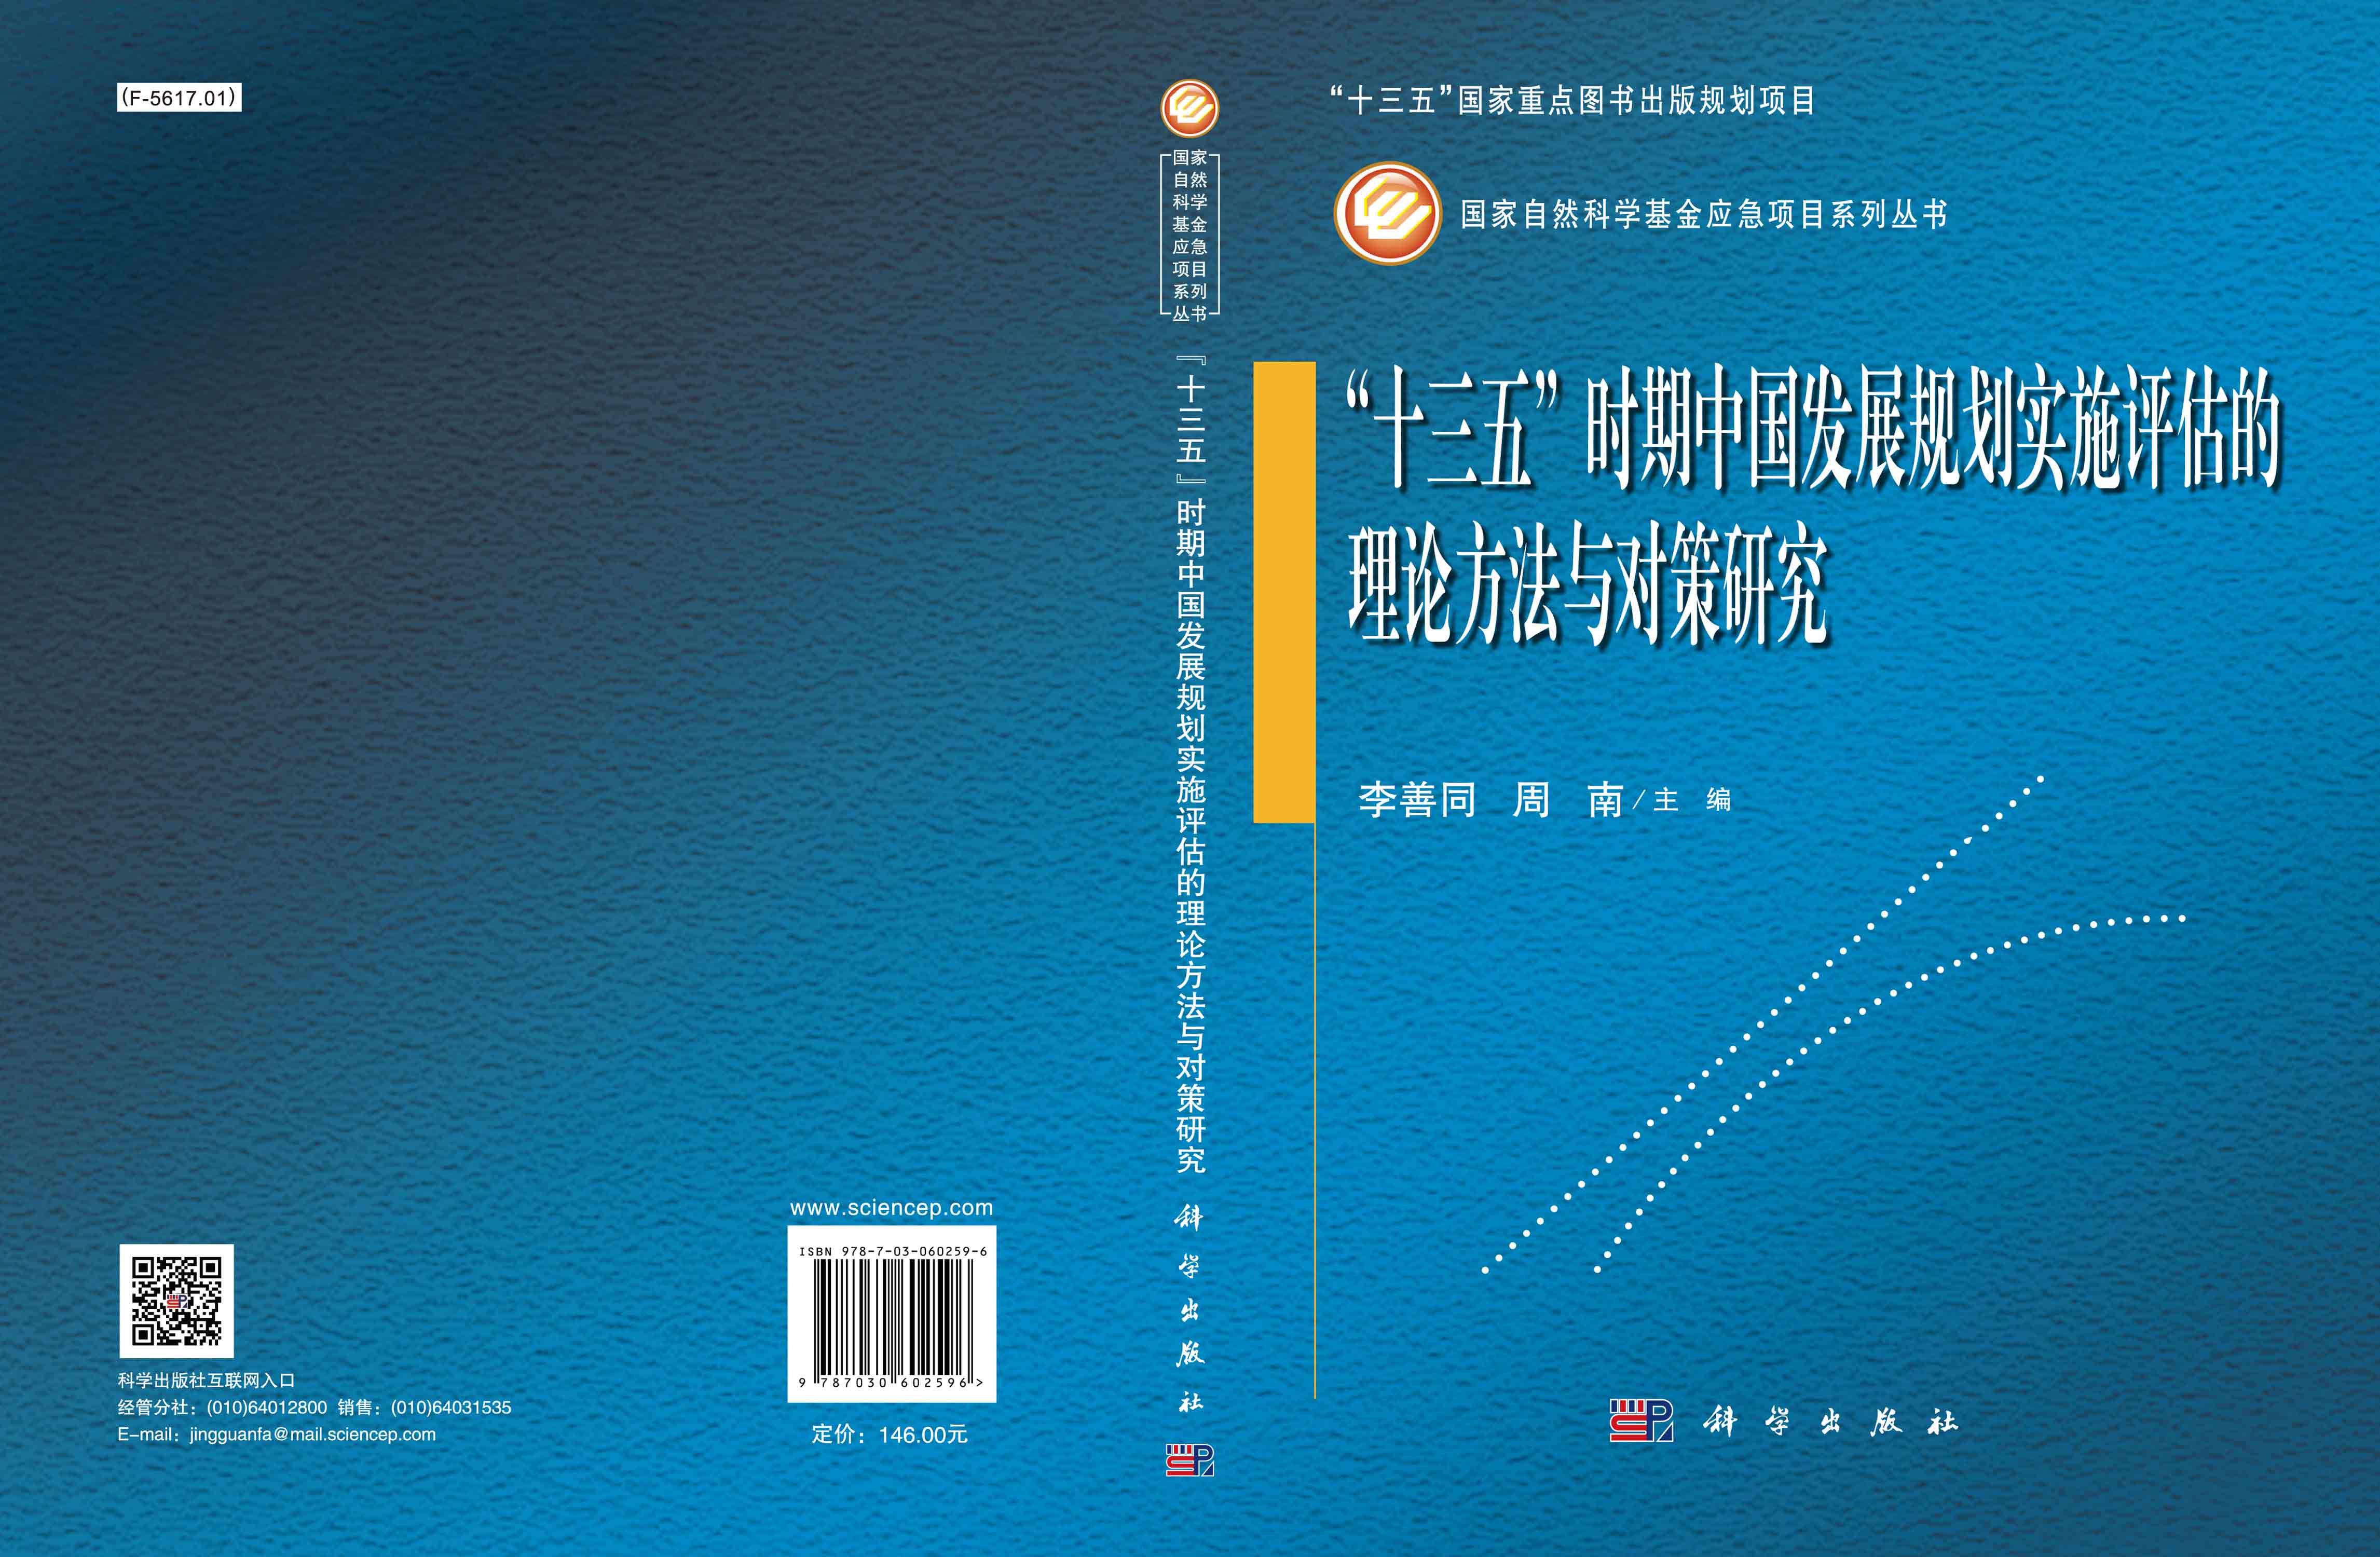 “十三五”时期中国发展规划实施评估的理论方法与对策研究